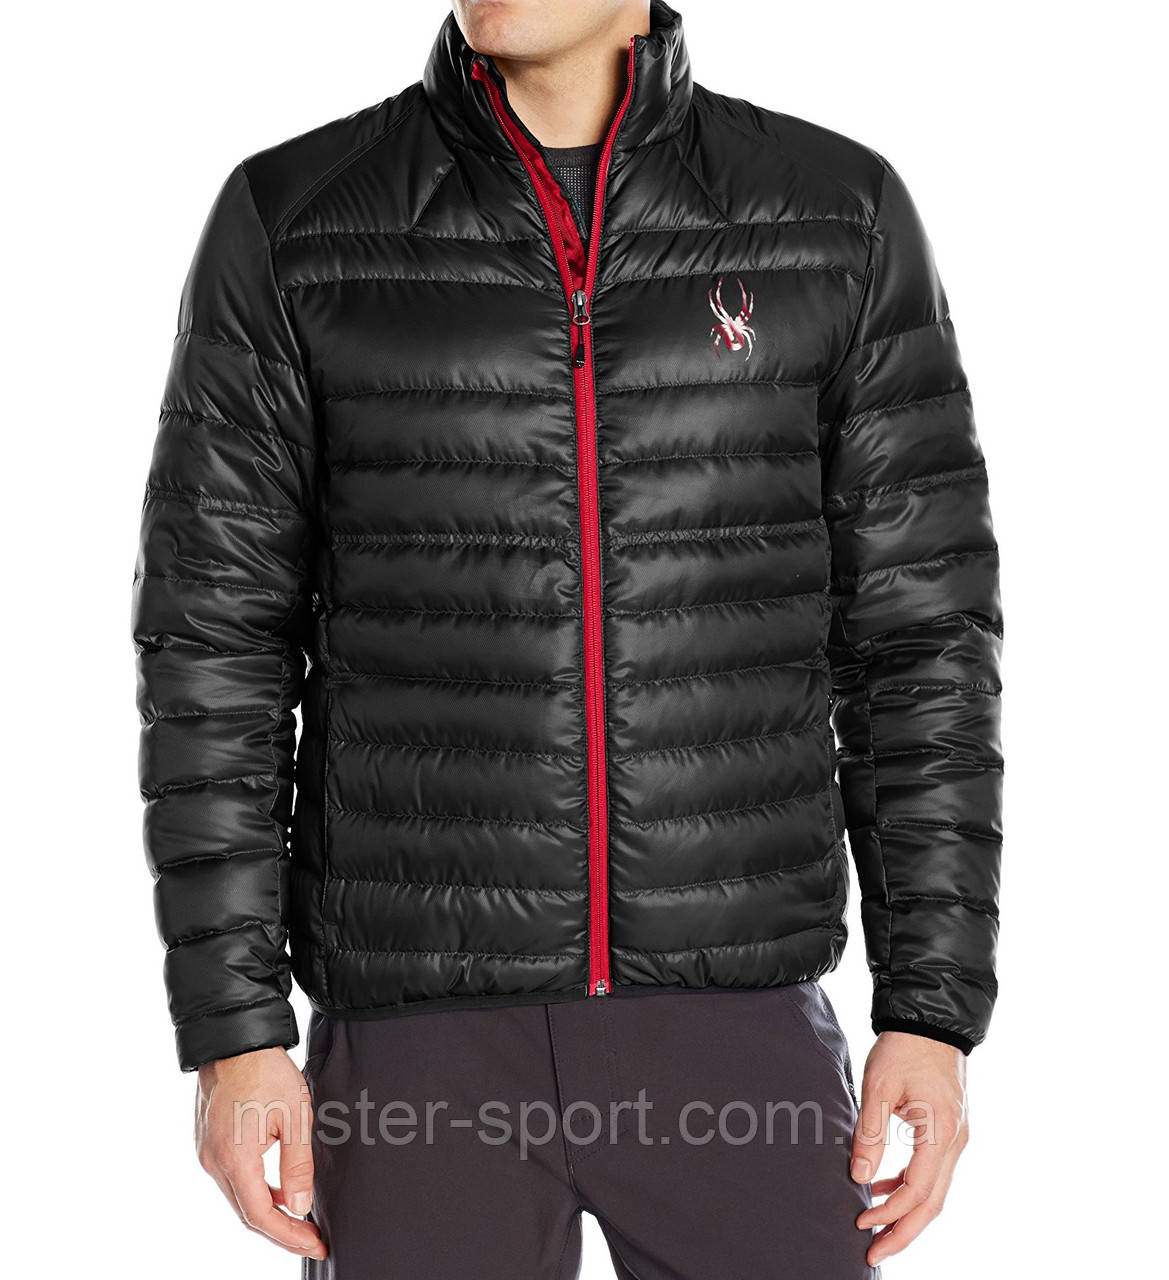 Чоловіча куртка Spyder Men's Prymo Down Jacket, Black/Red, L розмір